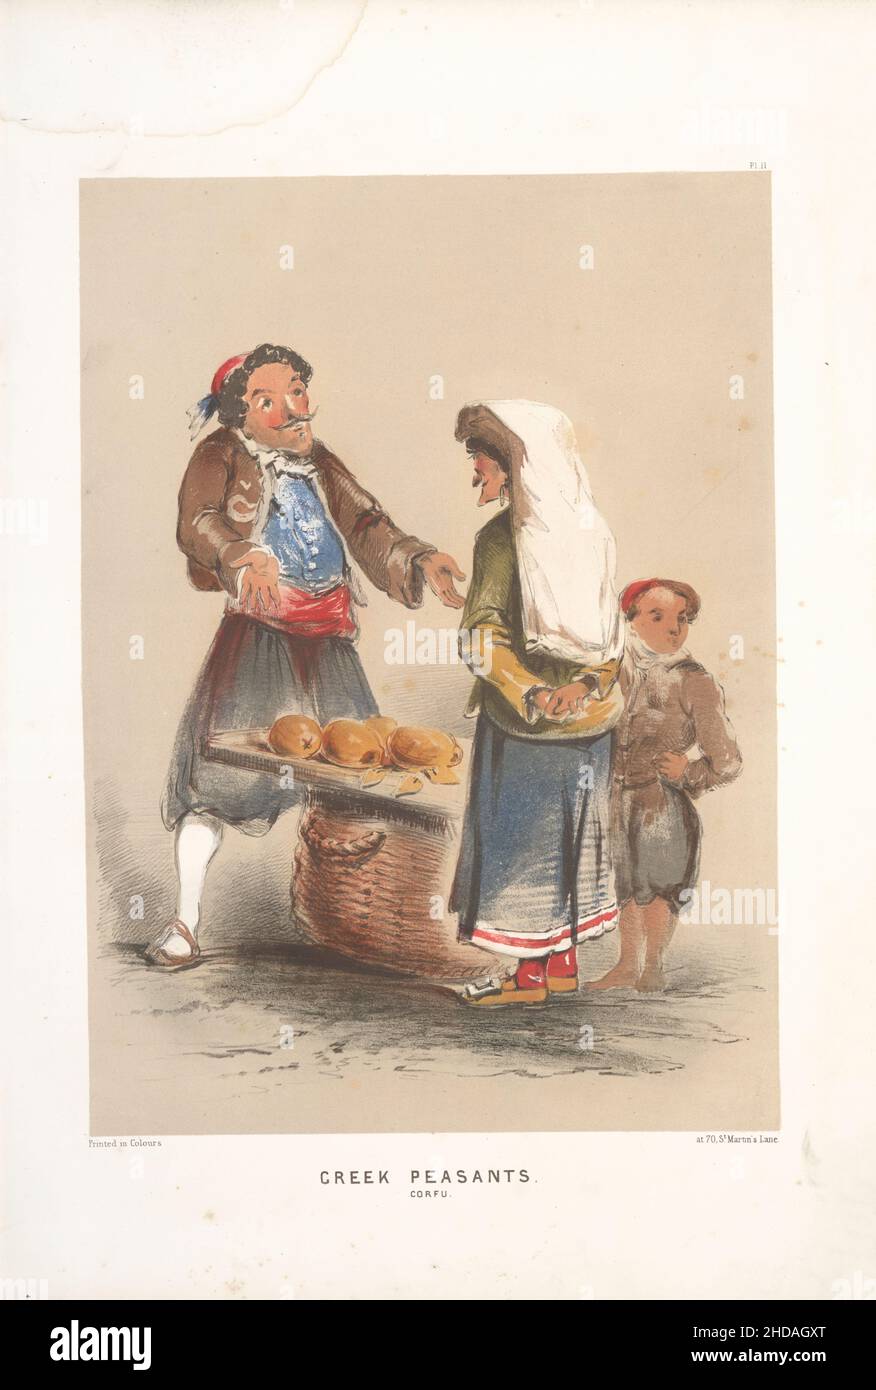 Litografía a color vintage del Imperio Otomano: Campesinos griegos; Corfú 1854, de Forbes Mac Bean (artista) y Justin Sutcliffe (litógrafo) Foto de stock